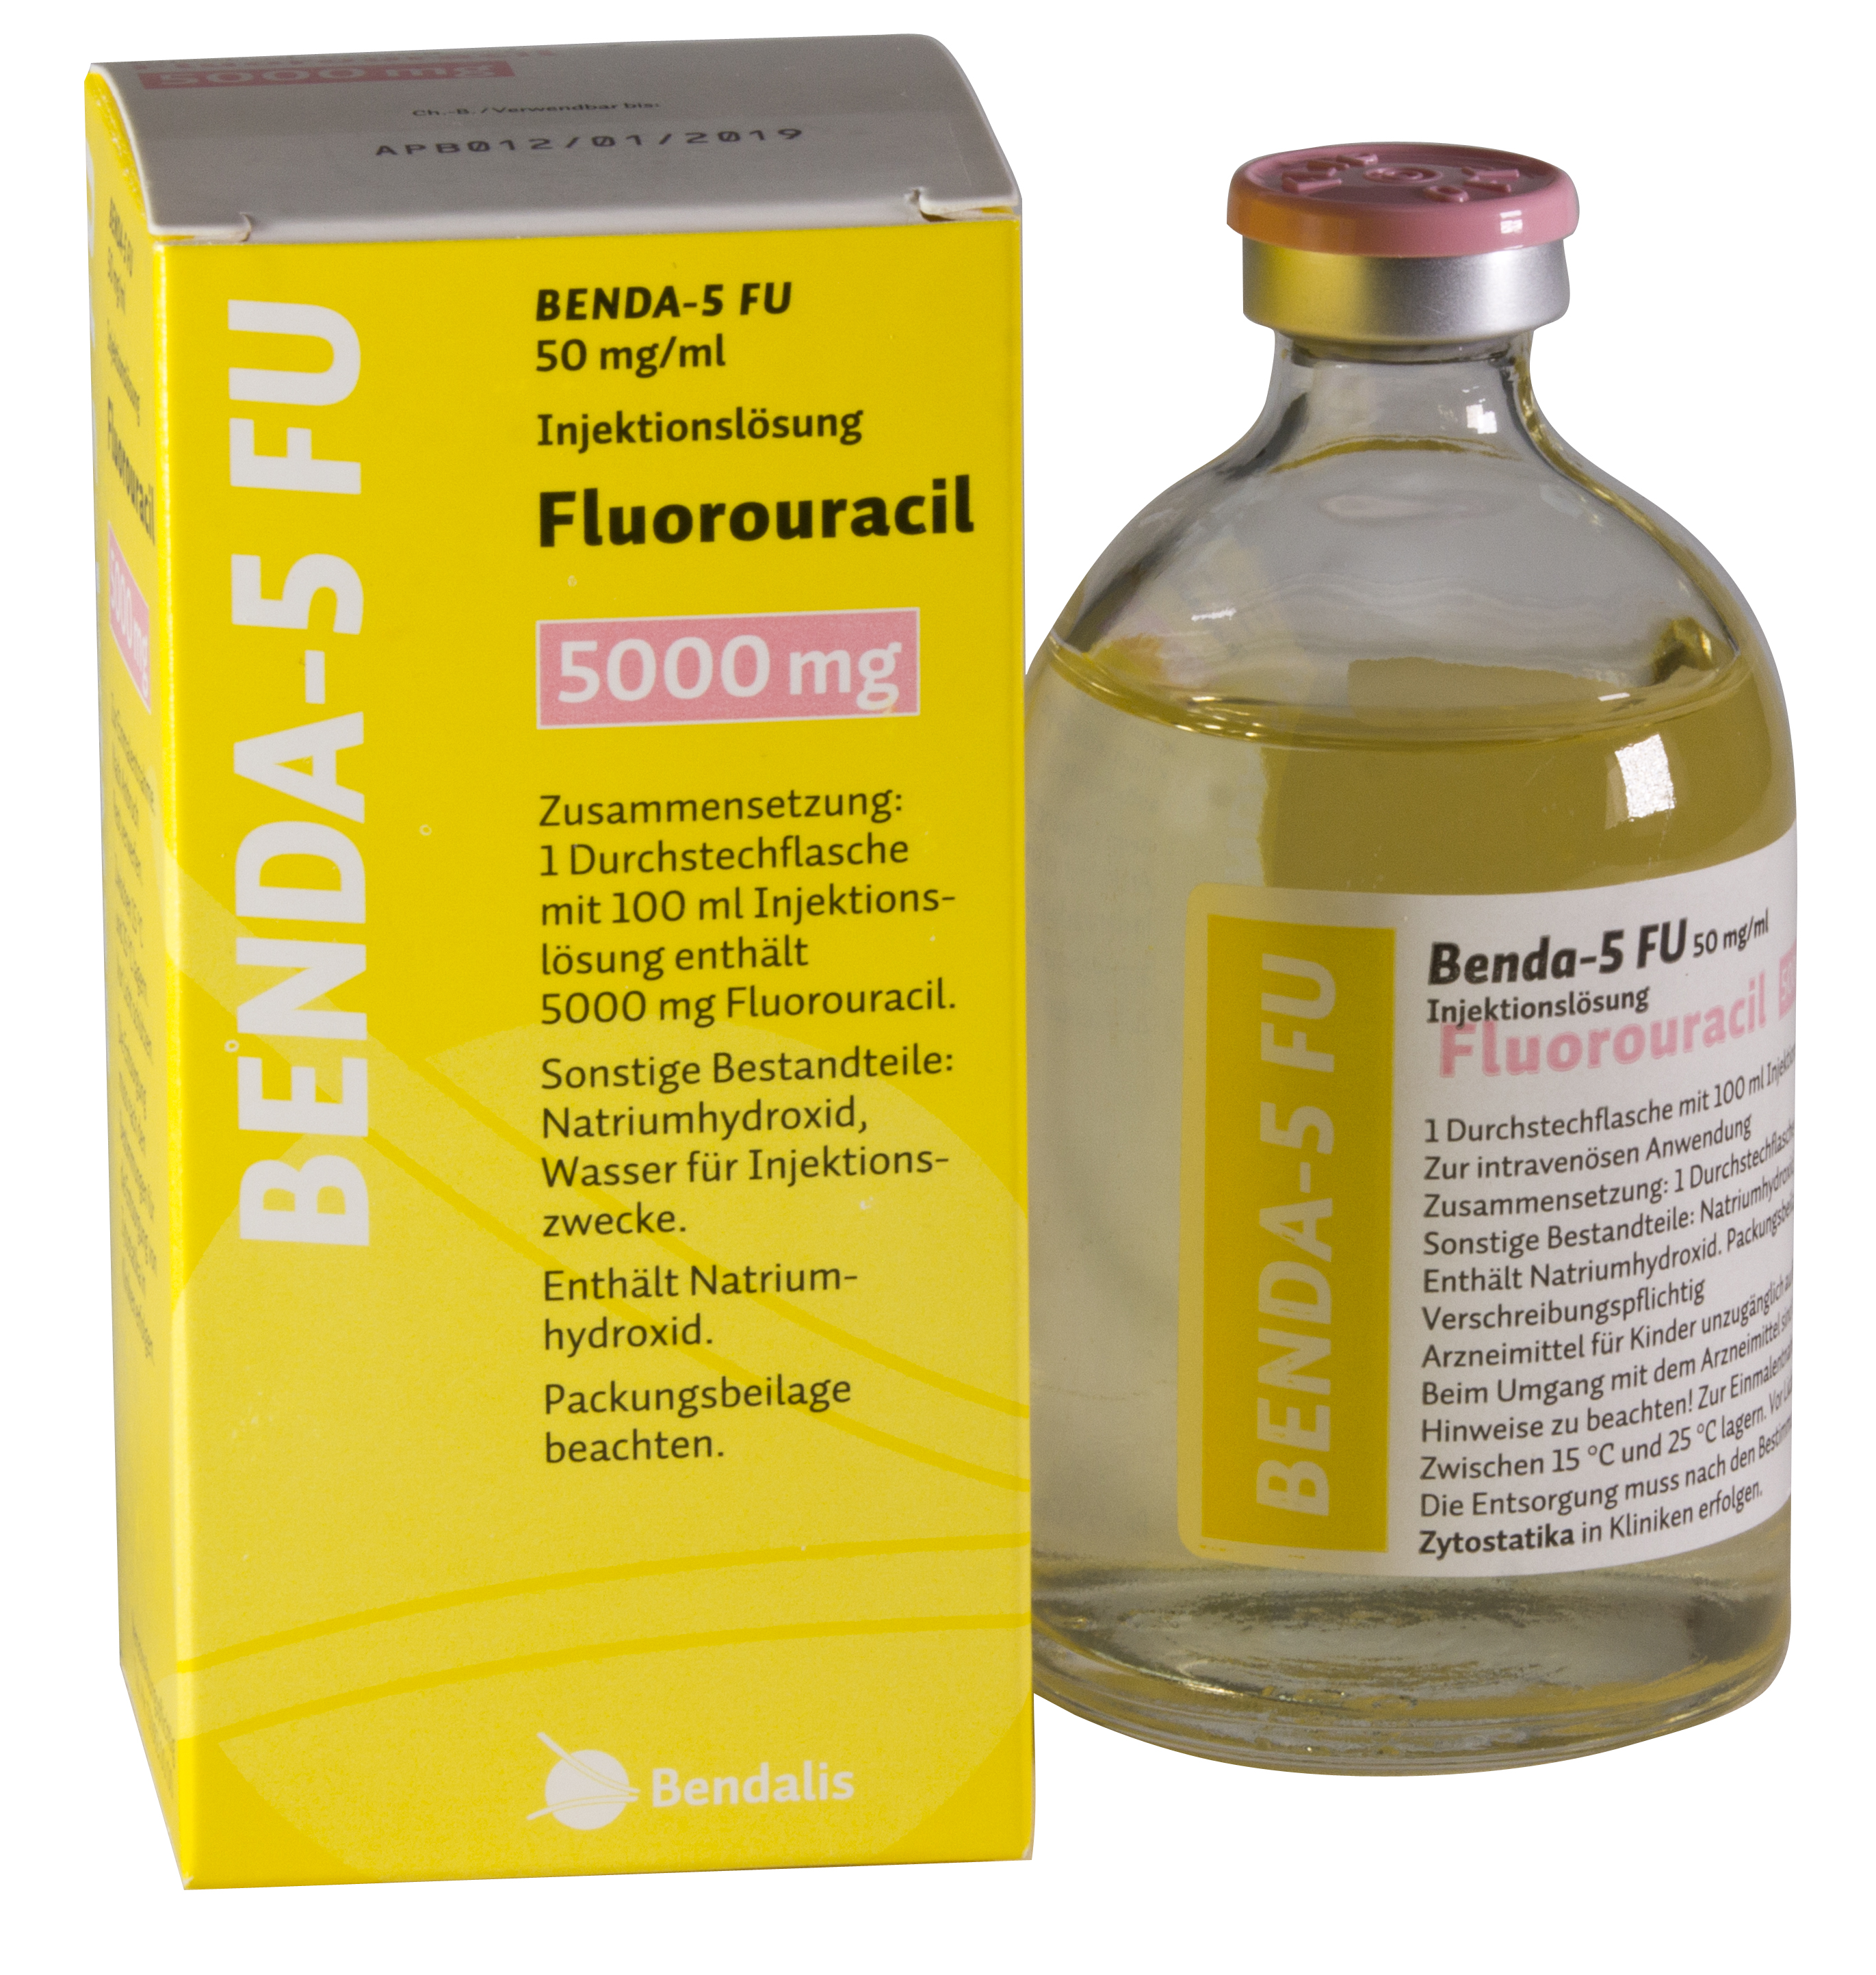 5 fluorouracil